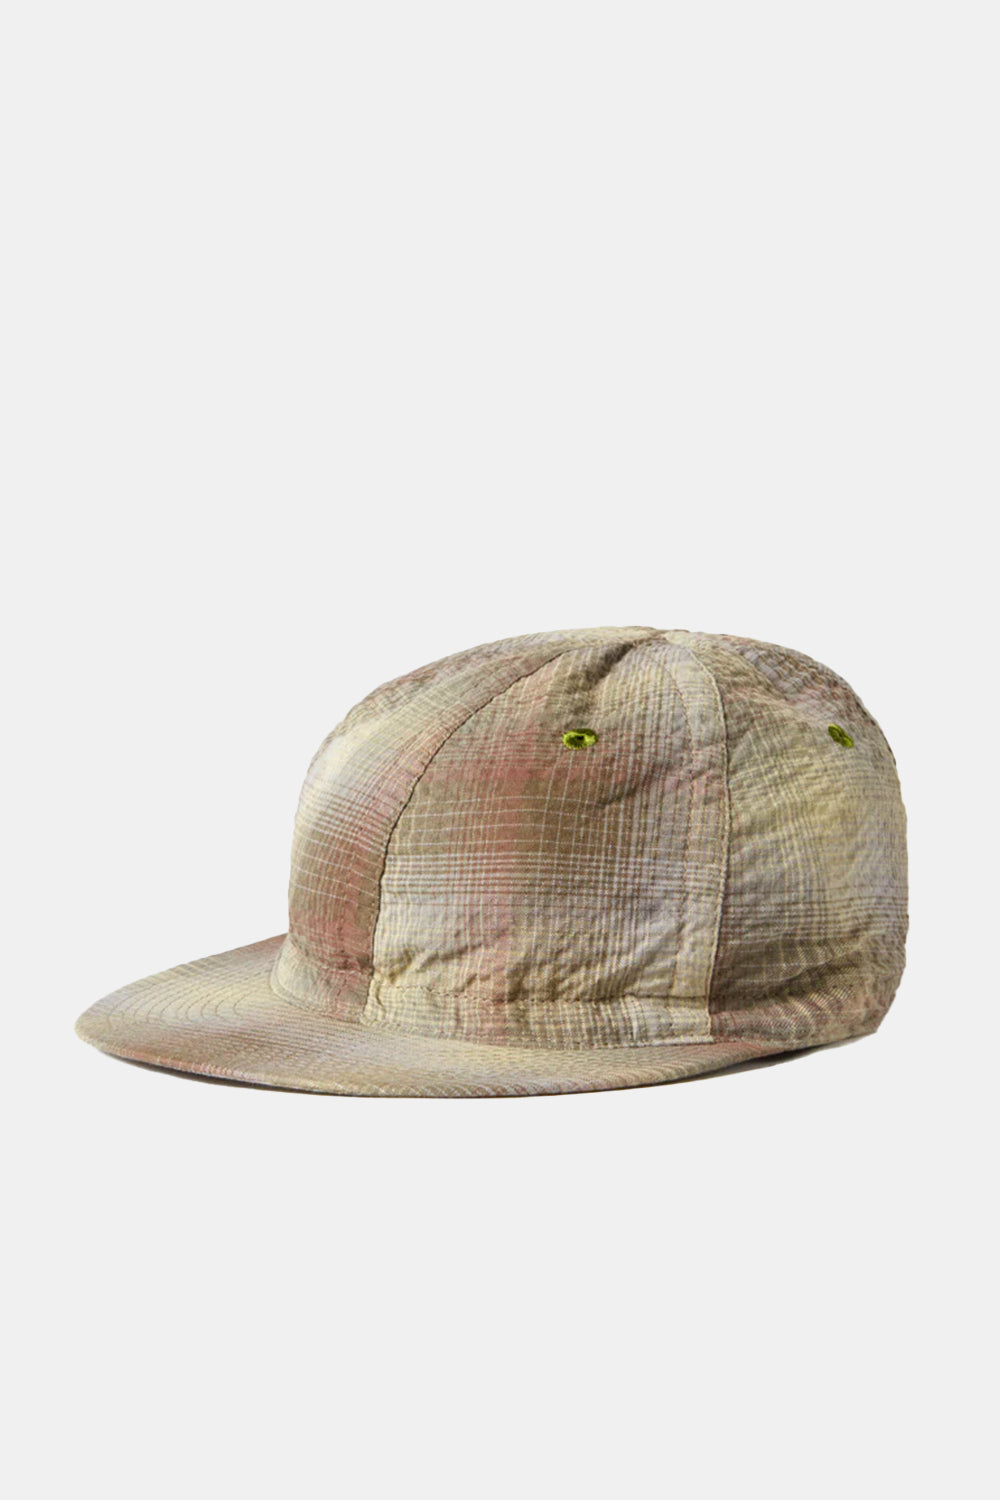 Universal Works Seersucker Mechanics Hat (Olive)
